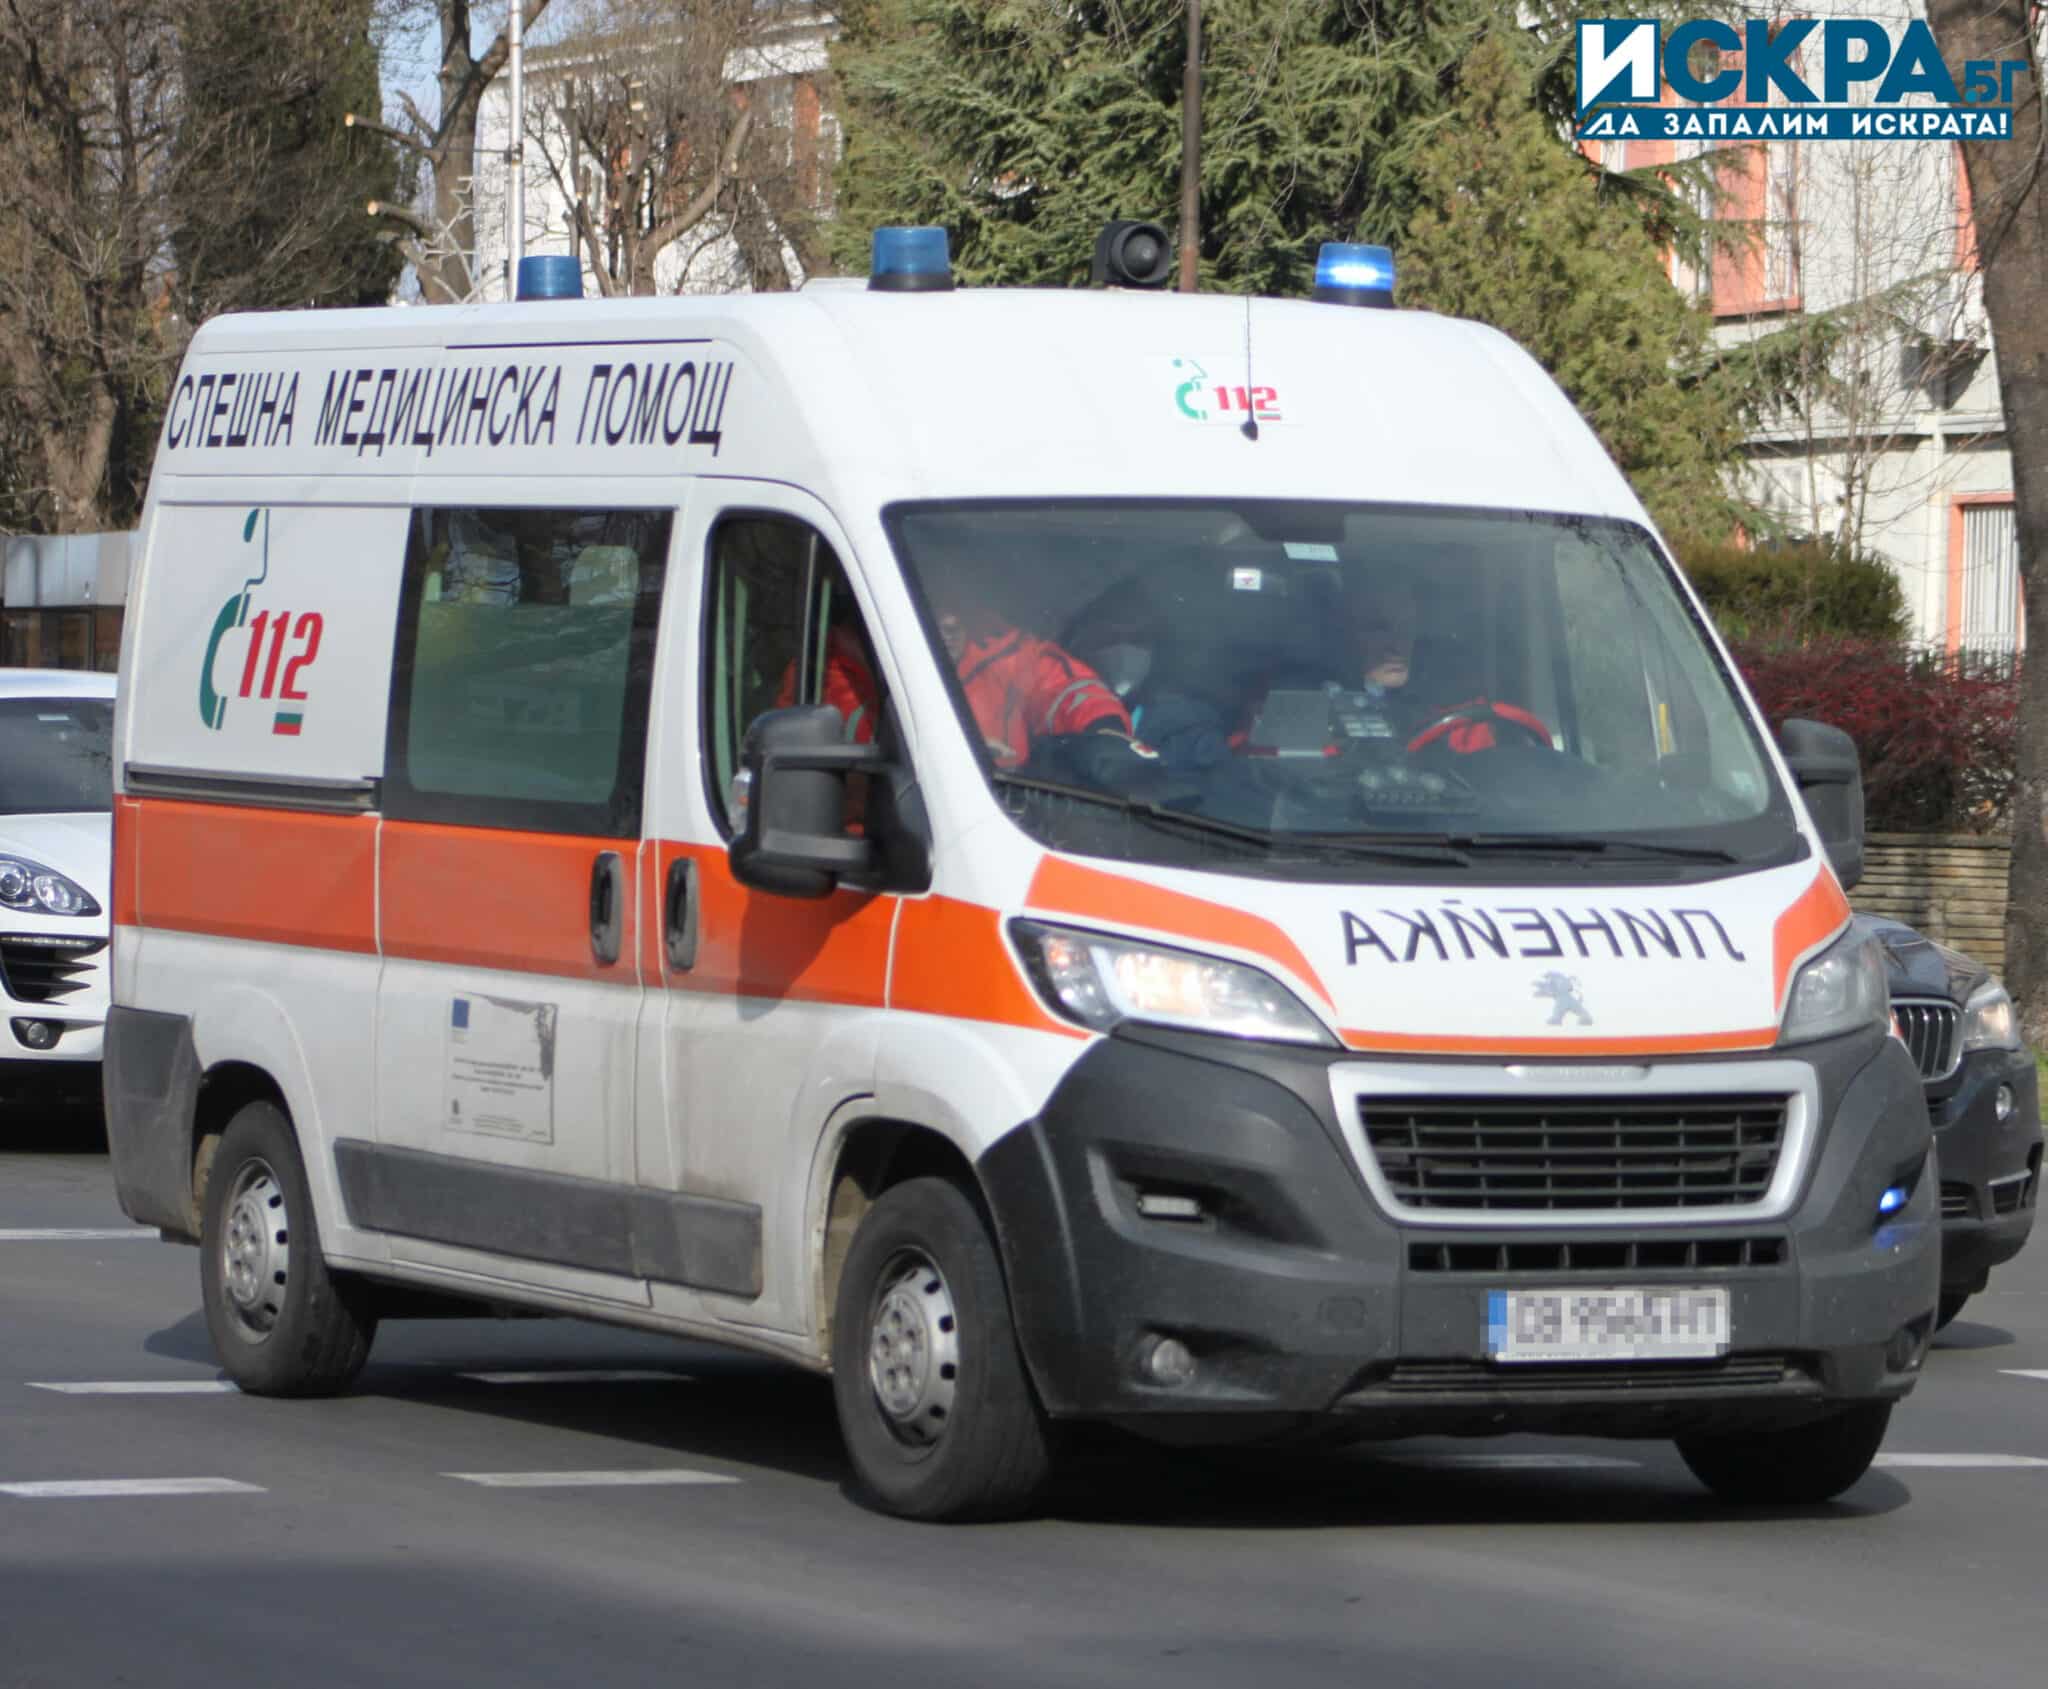 Двама души са пострадали при пътнотранспортно произшествие в Старозагорско съобщиха